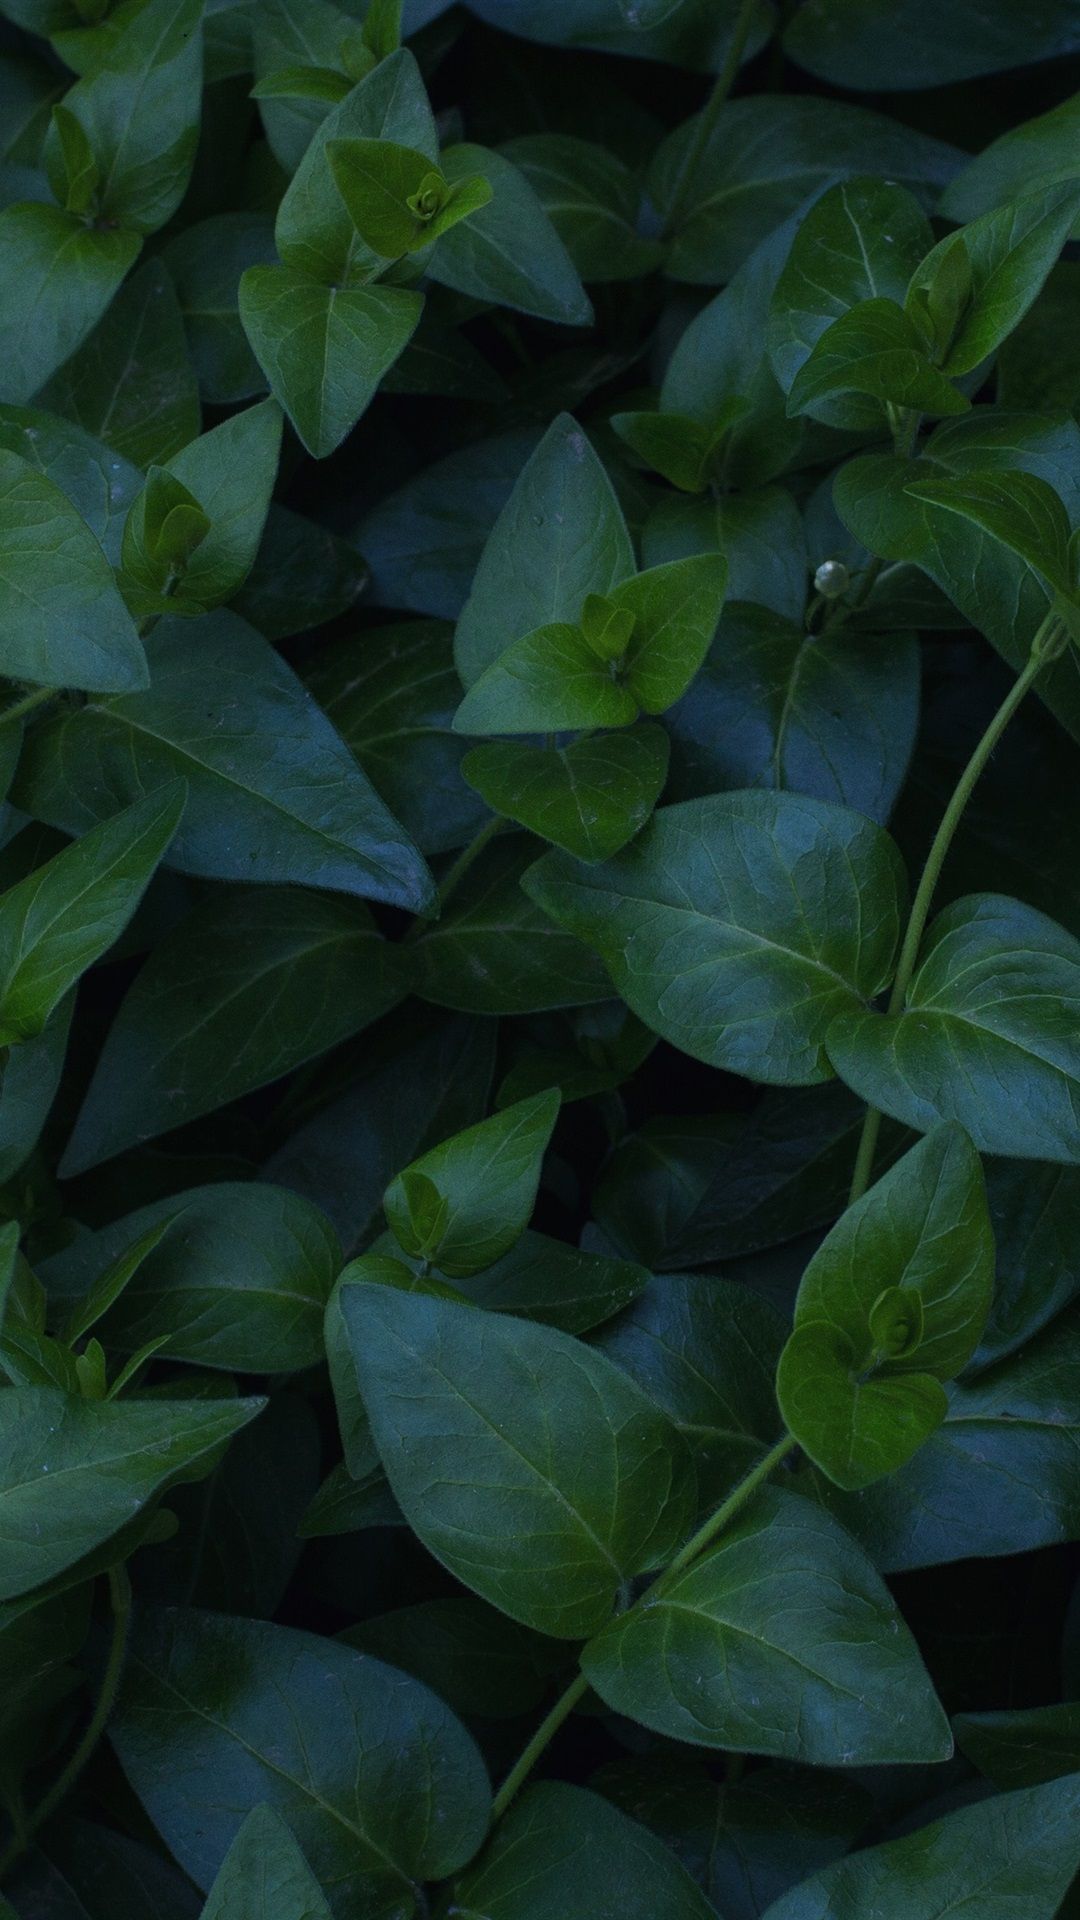  Grüne Blätter Hintergrundbild 1080x1920. Pflanzen, Grüne Blätter 1080x1920 IPhone 8 7 6 6S Plus Hintergrundbilder, HD, Bild